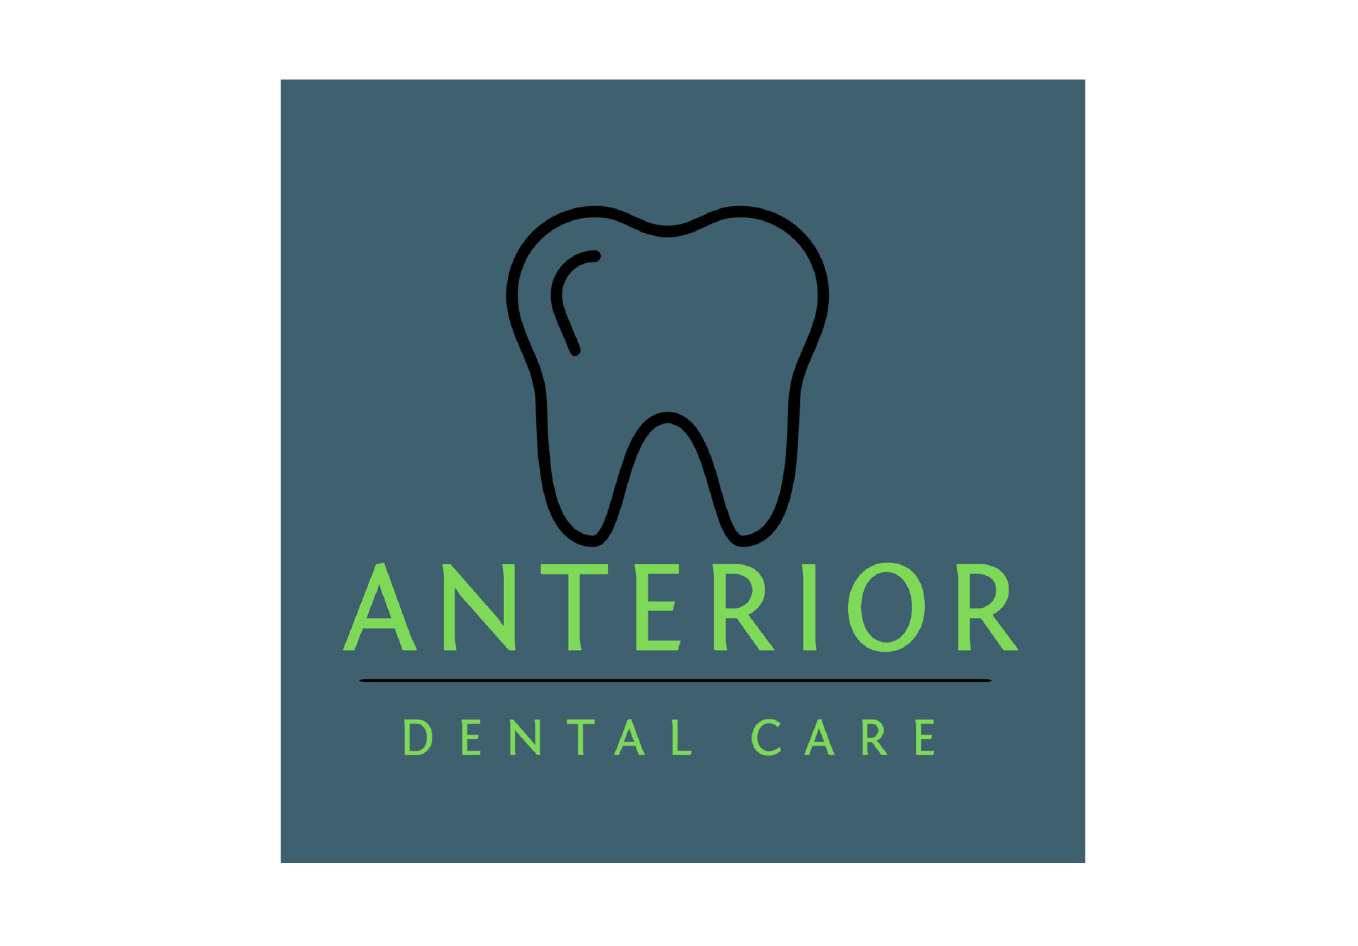 Anterior Dental Care